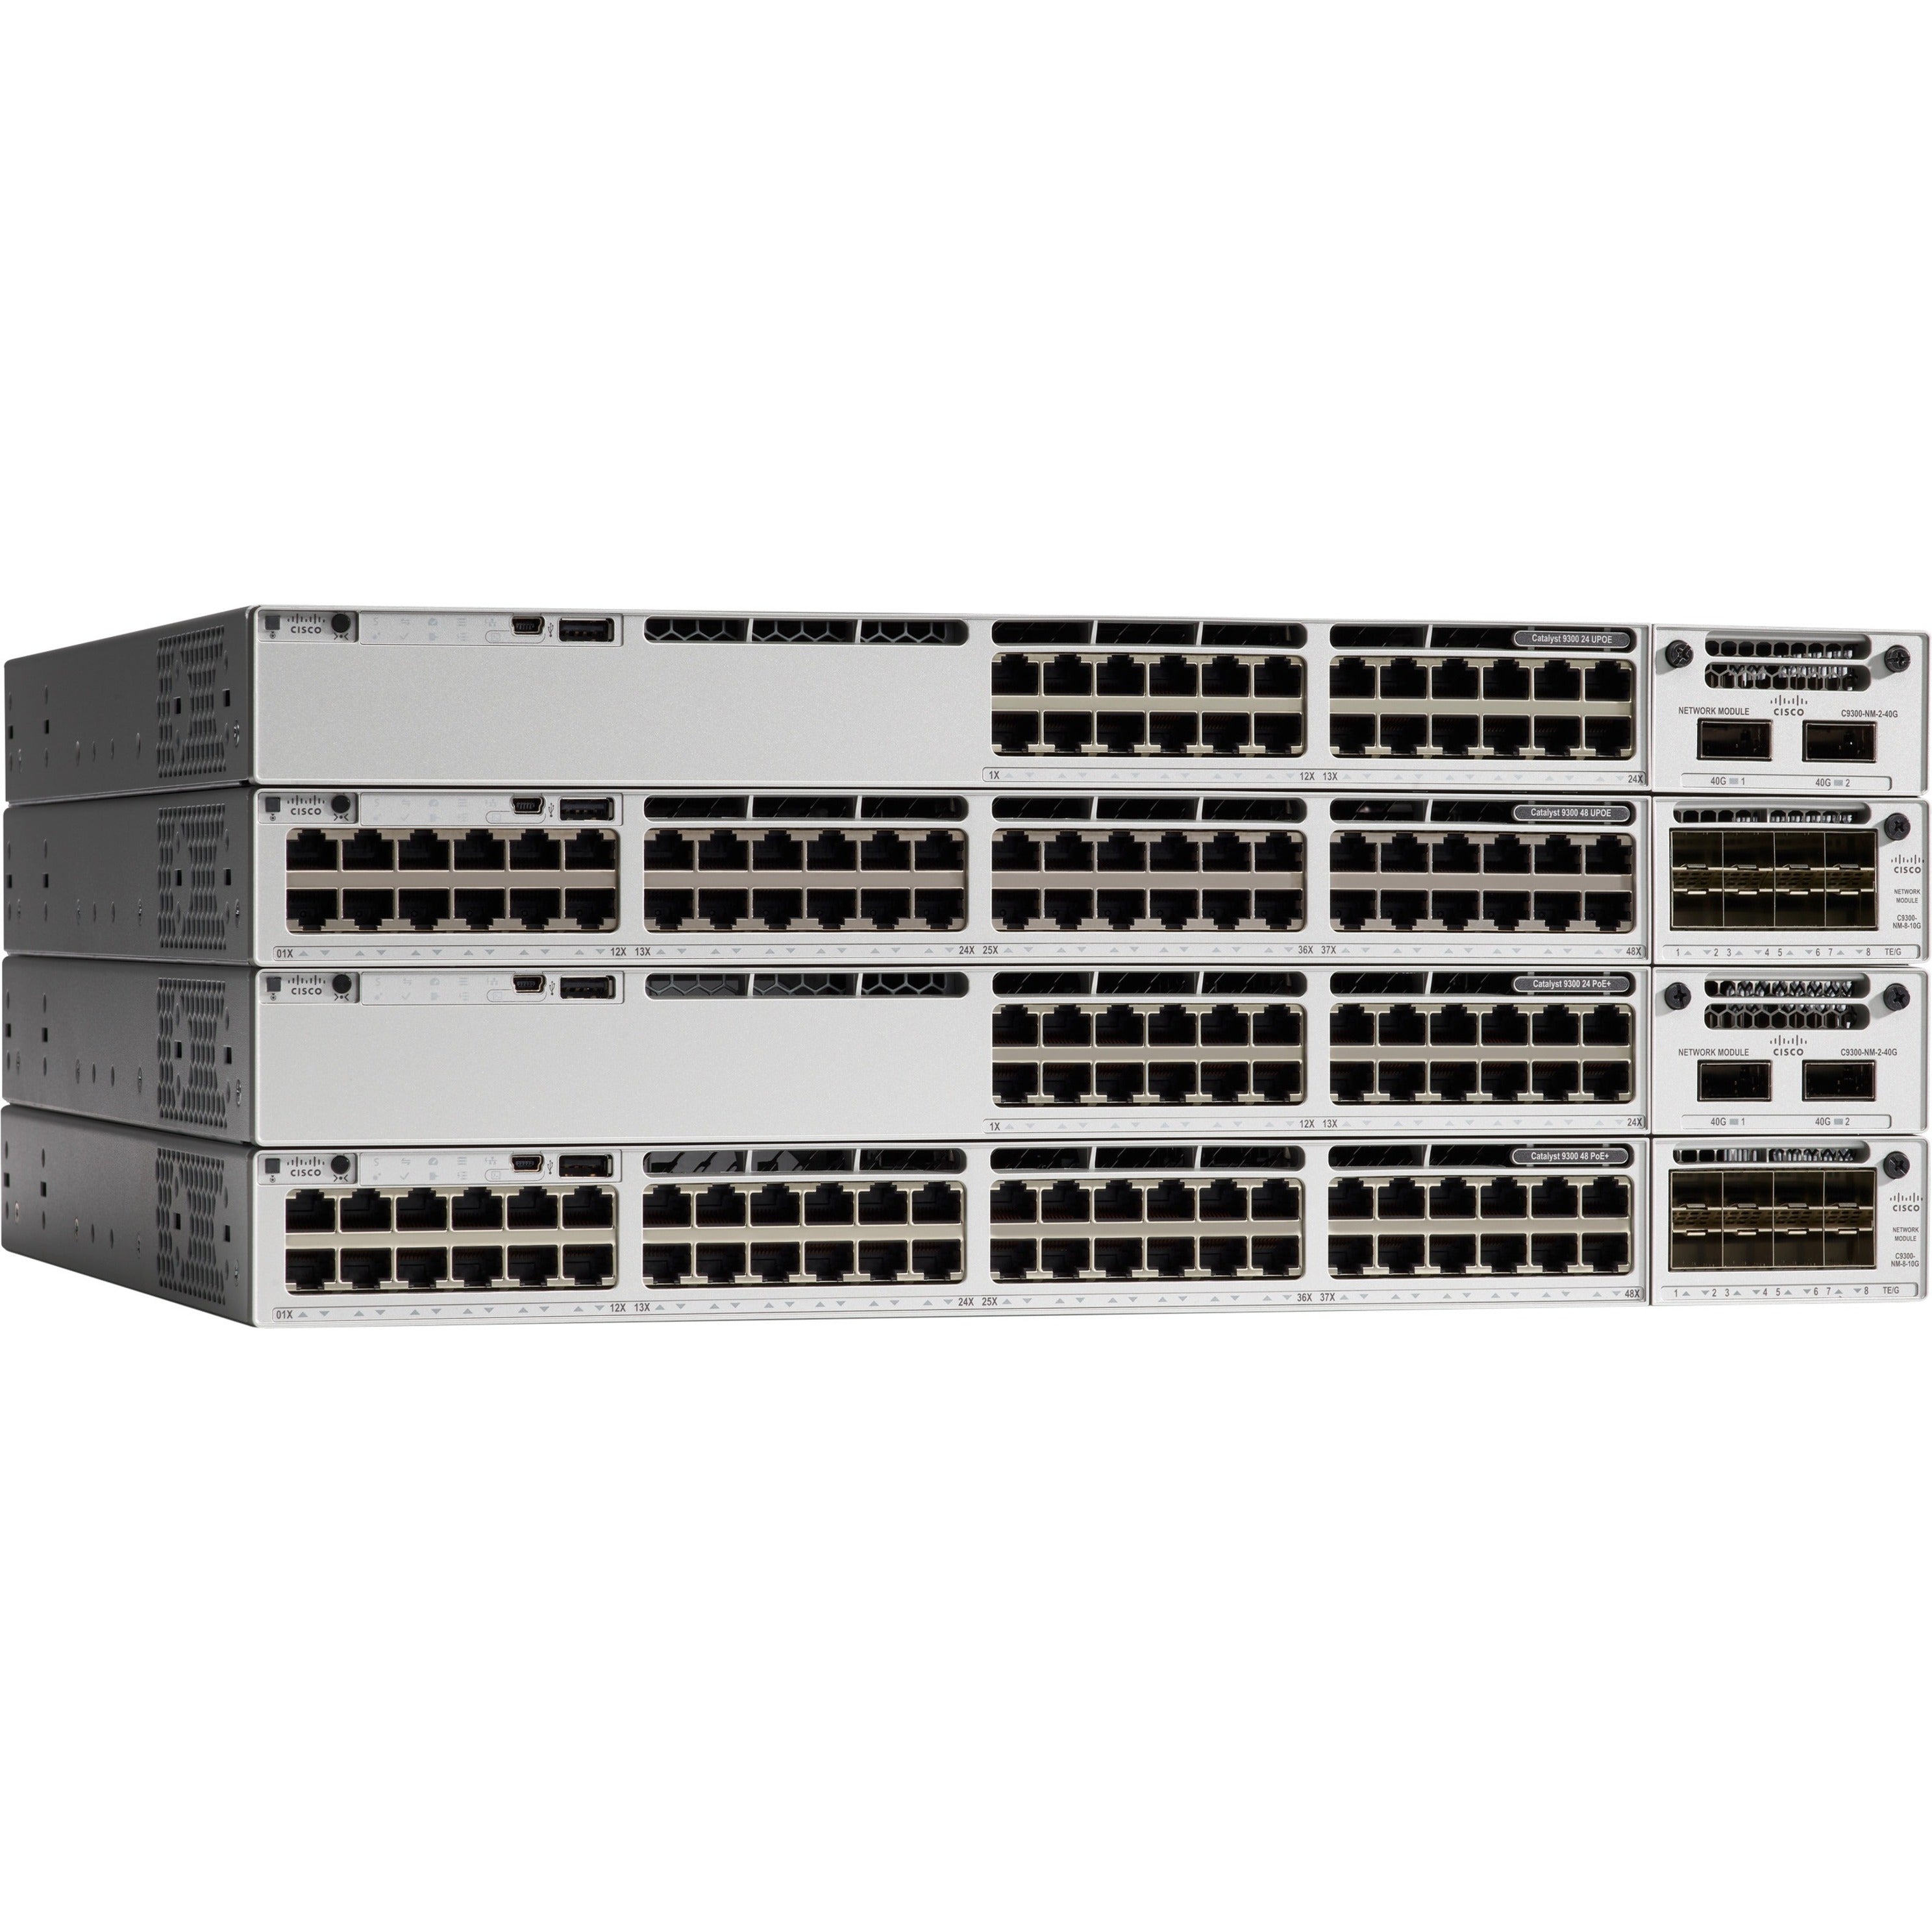 Cisco C9300-24P-A Catalyst 9300 24-port PoE+ Ethernet Switch Network Advantage  Cisco C9300-24P-A Catalizzatore 9300 switch Ethernet PoE+ a 24 porte Vantaggio di Rete